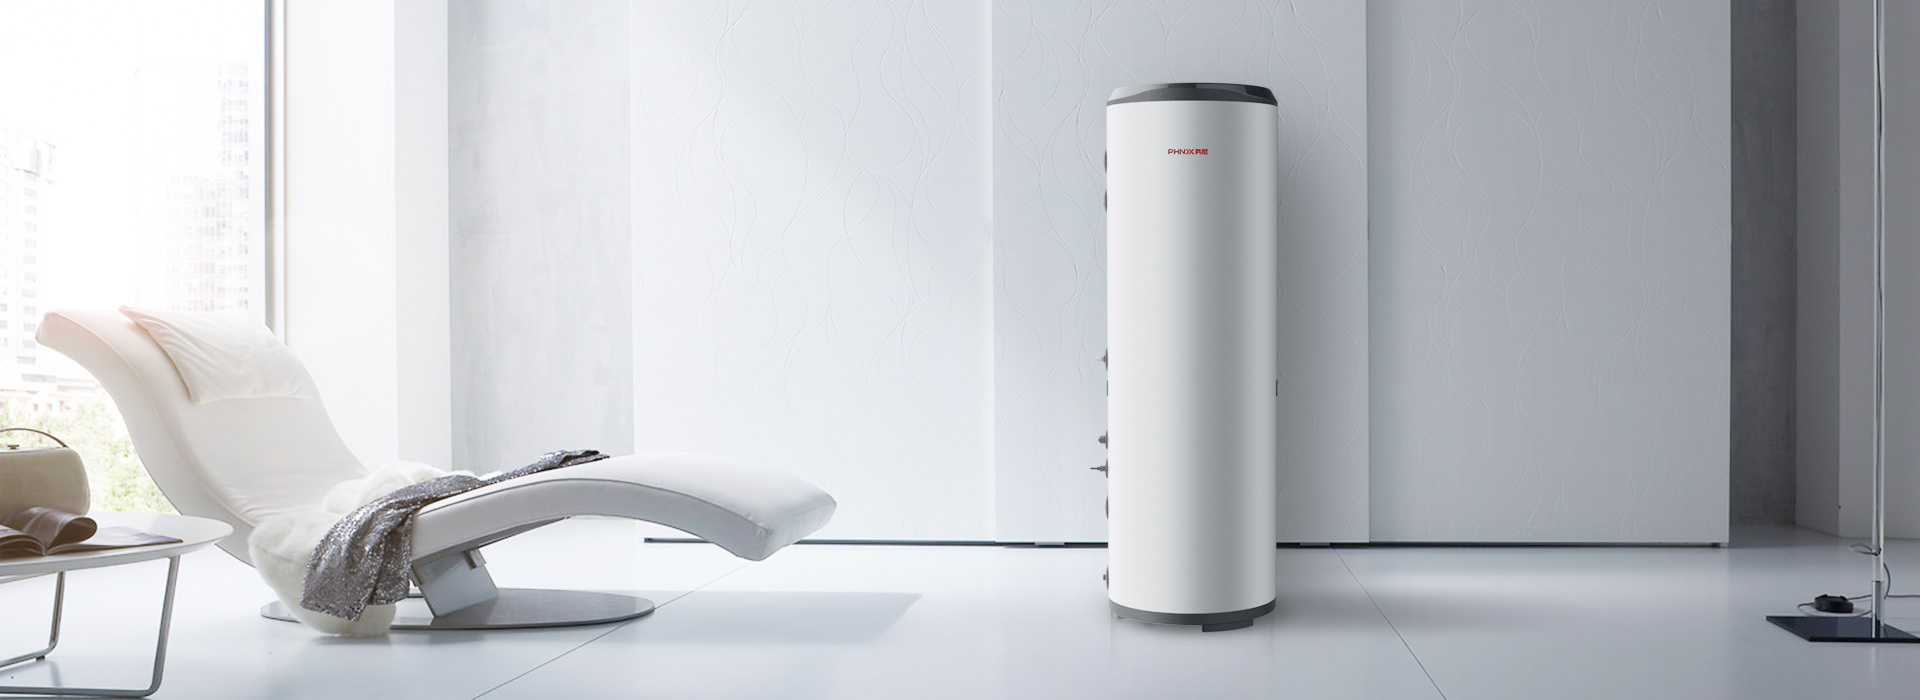 芬尼空气能热水器精英型200L亮丽白色设计，时尚外观